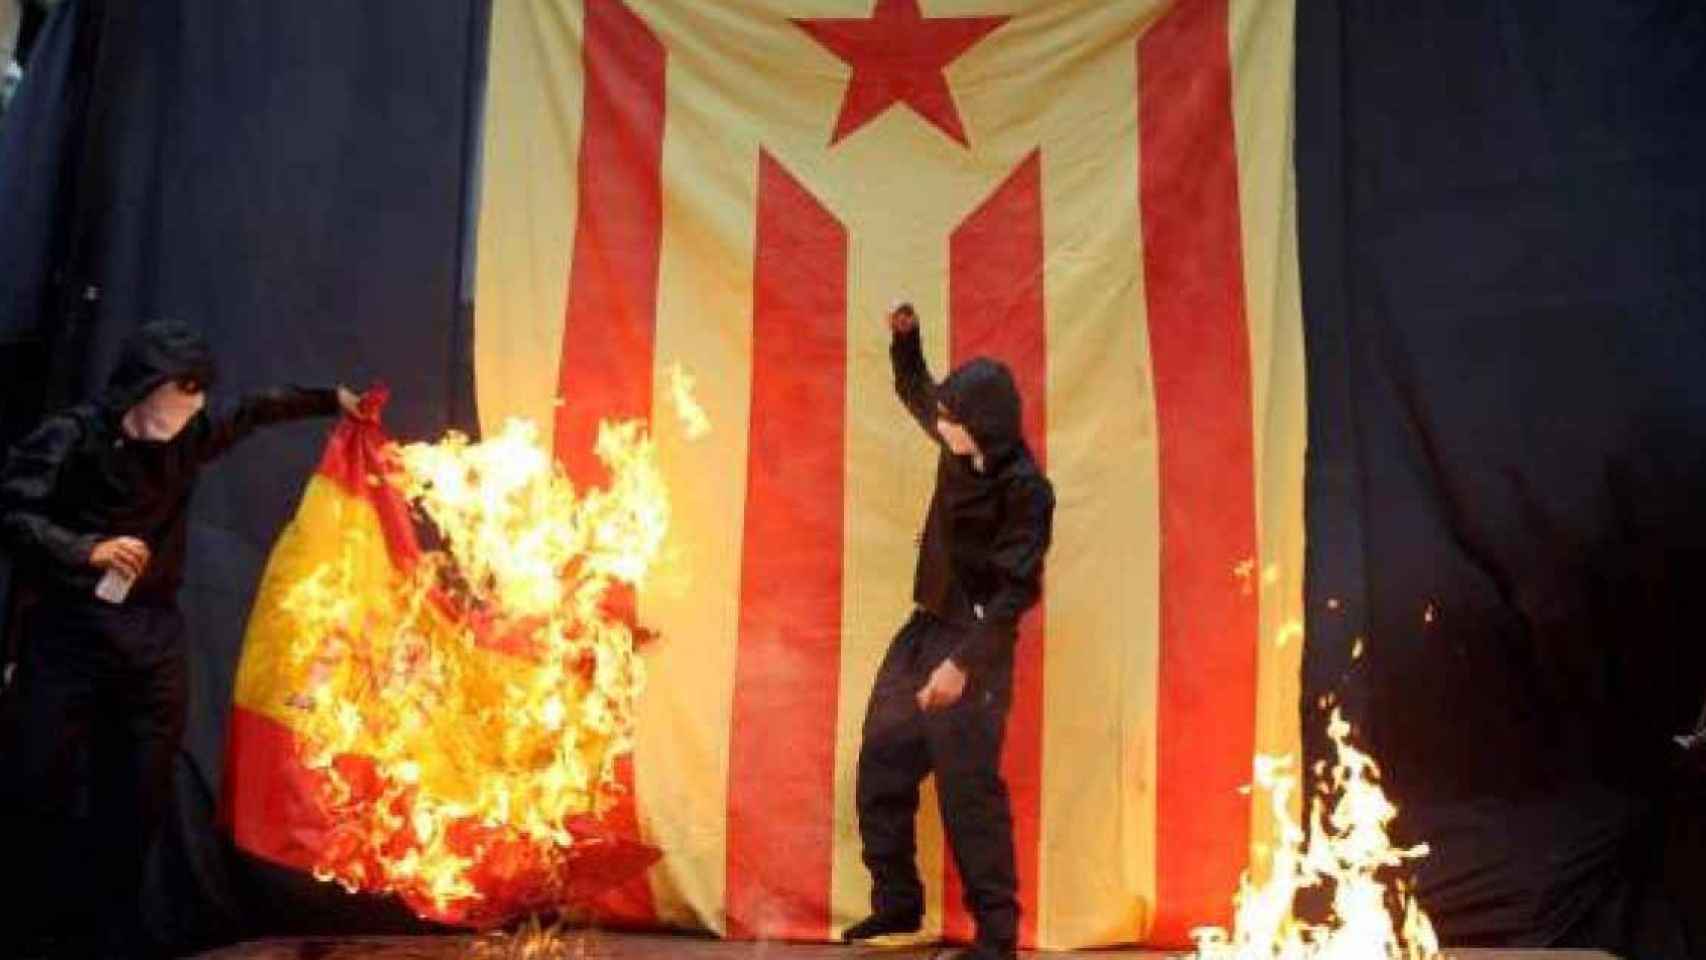 Encapuchados queman la bandera española en la Diada